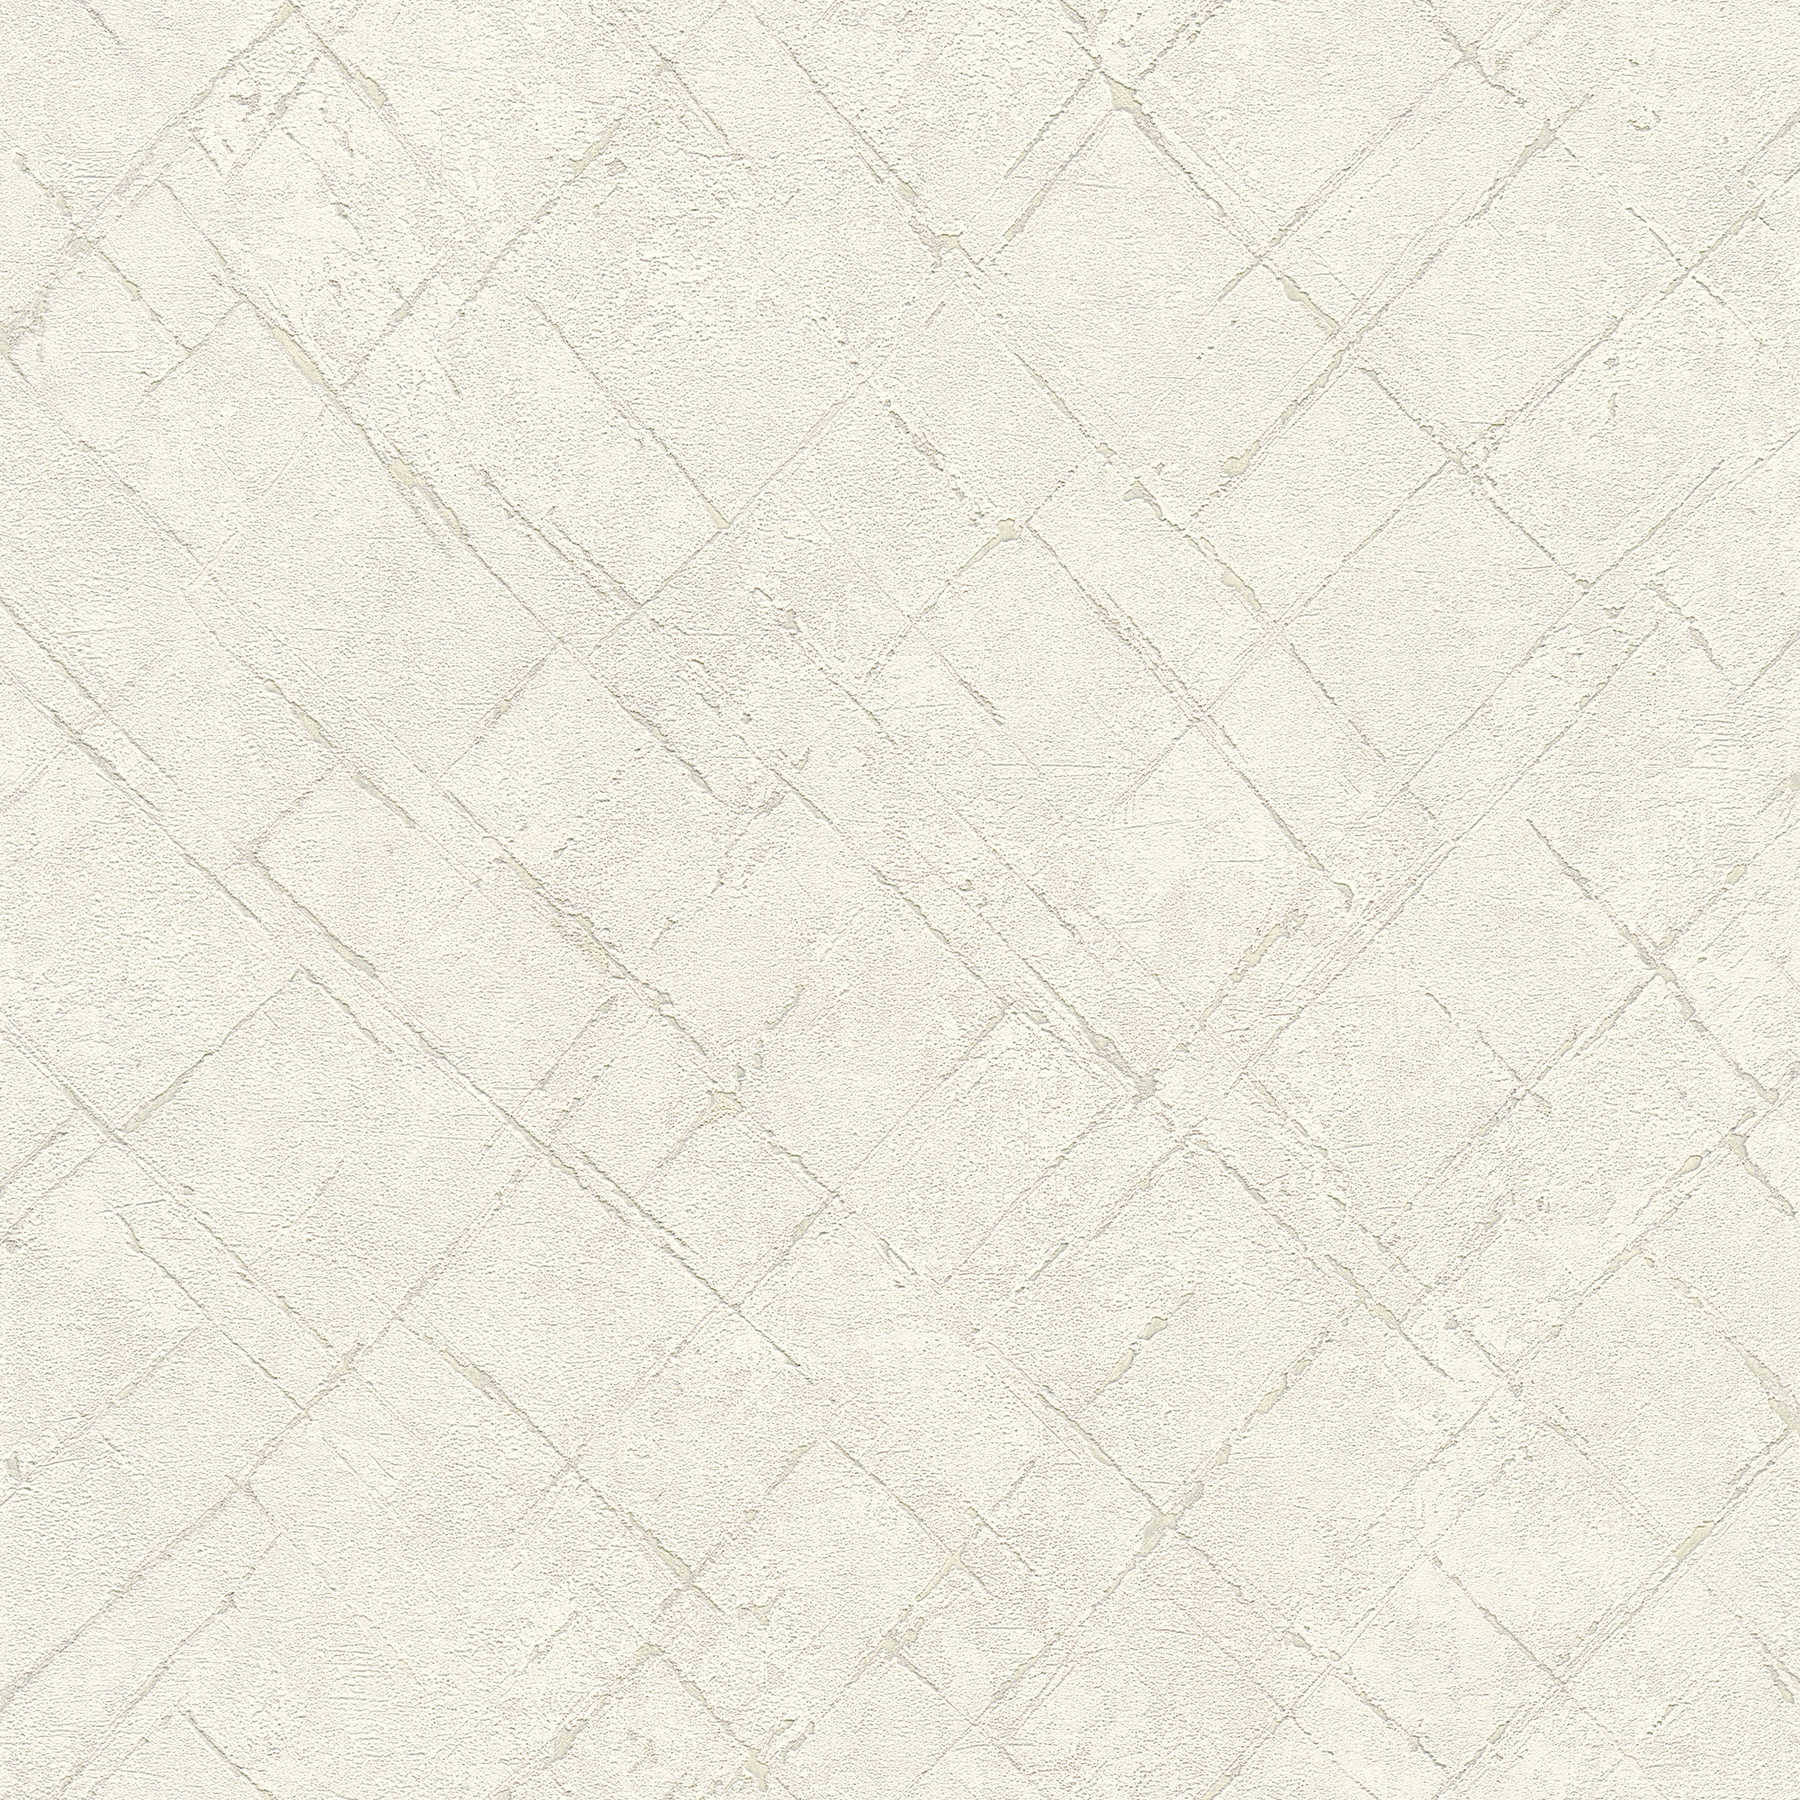 Carta da parati in tessuto non tessuto effetto intonaco in look usato - bianco, grigio
